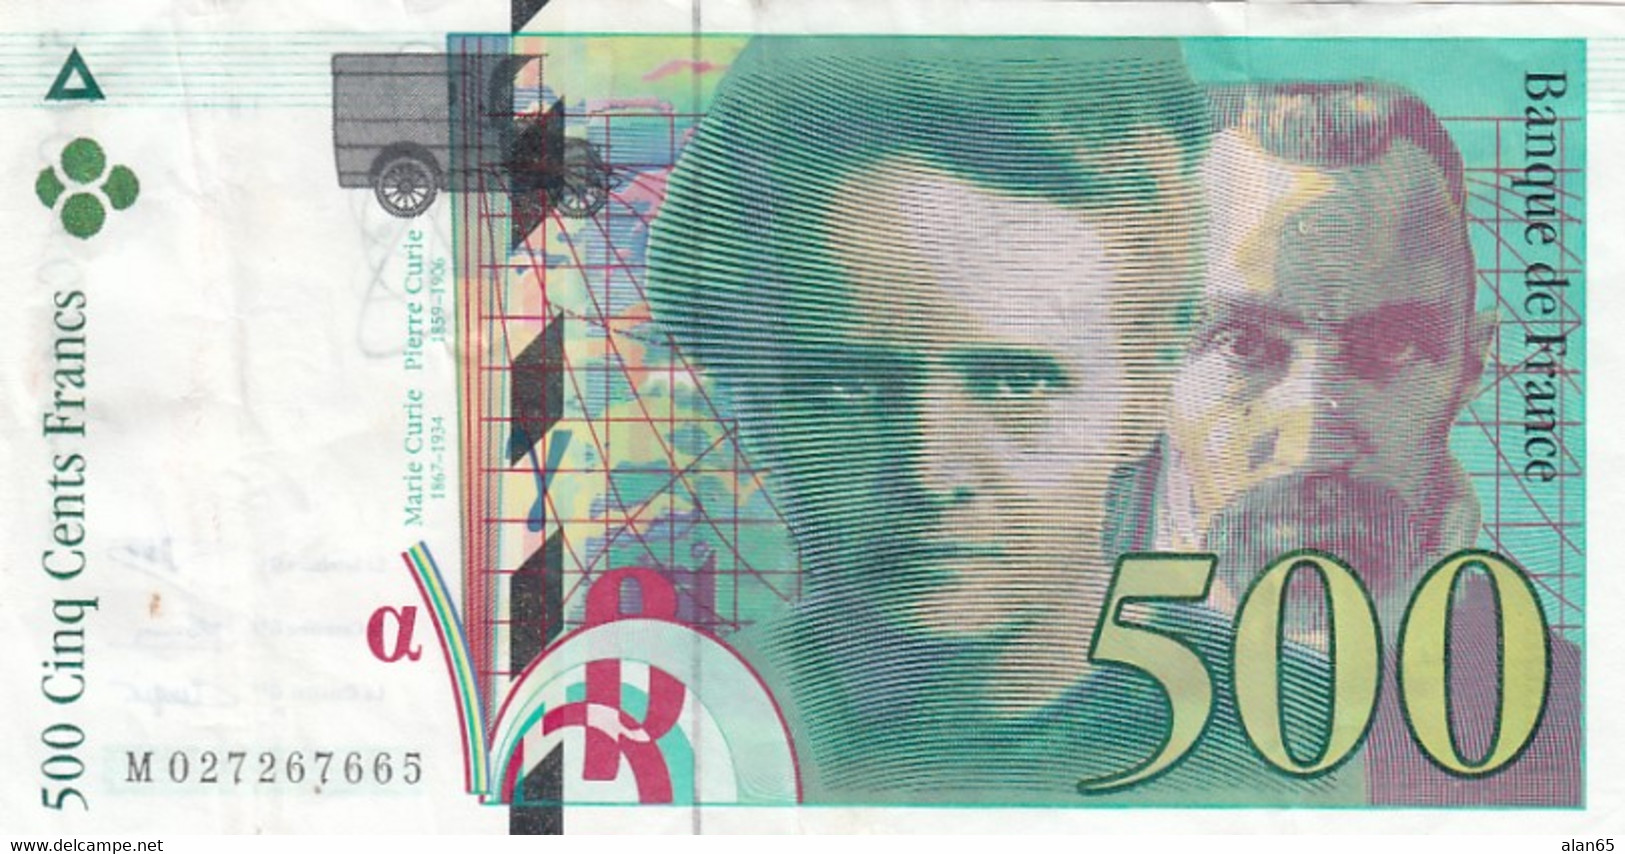 France #160a, 500 Francs 1994 Banknote - 500 F 1994-2000 ''Pierre Et Marie Curie''